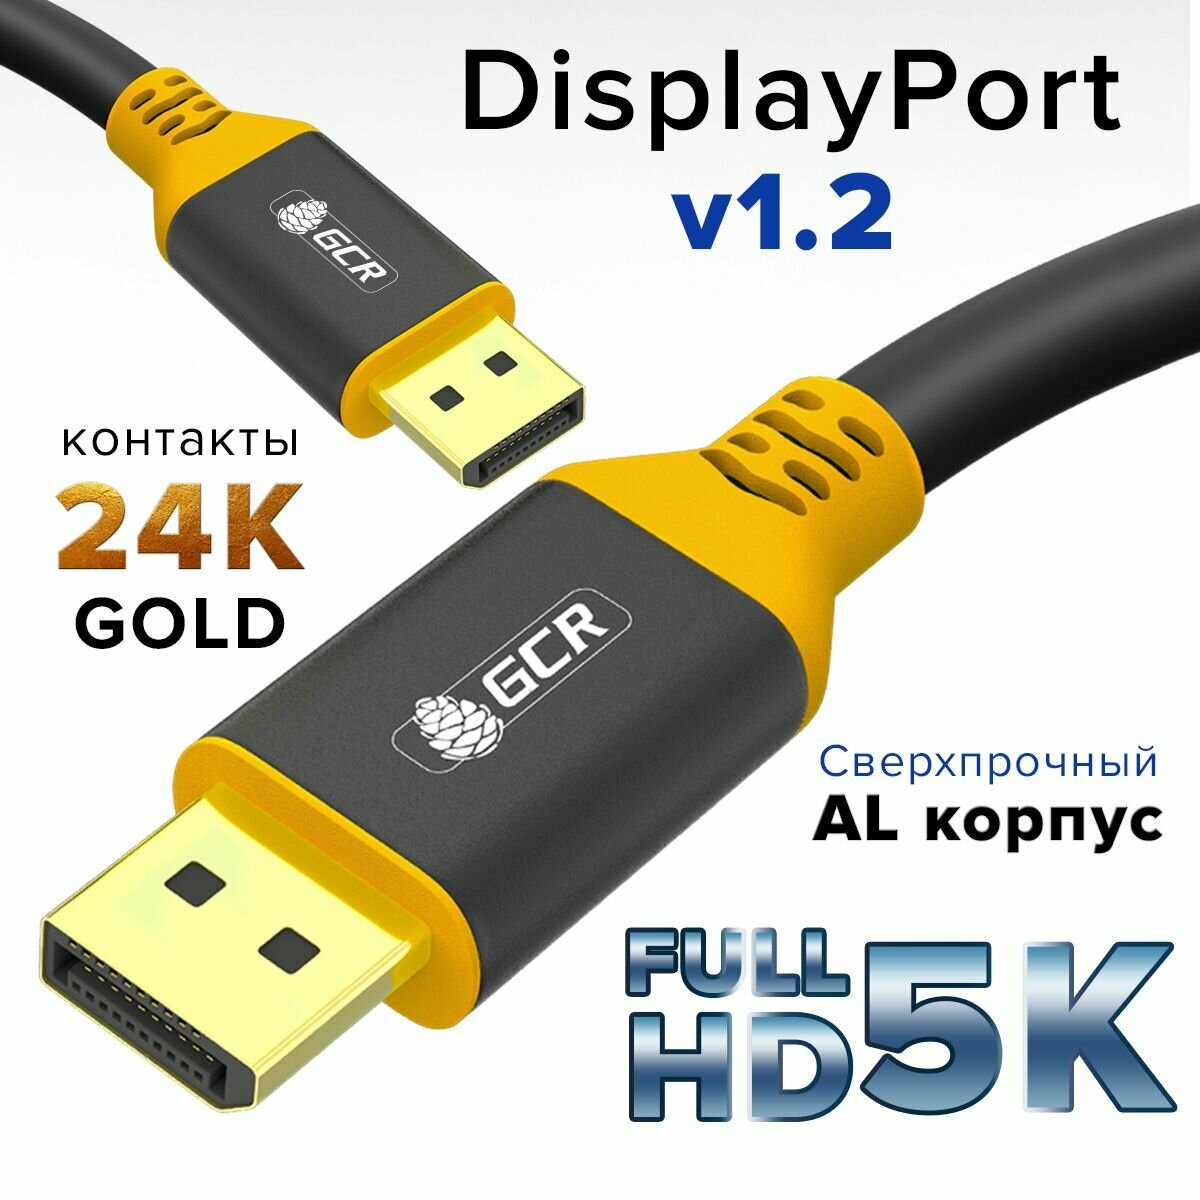 Кабель Displayport GCR 3 метра DisplayPort 1.2 поддержка 4K 75Hz Full HD для мониторов Samsung ACER BENQ LG HP AOC черно-желтый дисплей порт